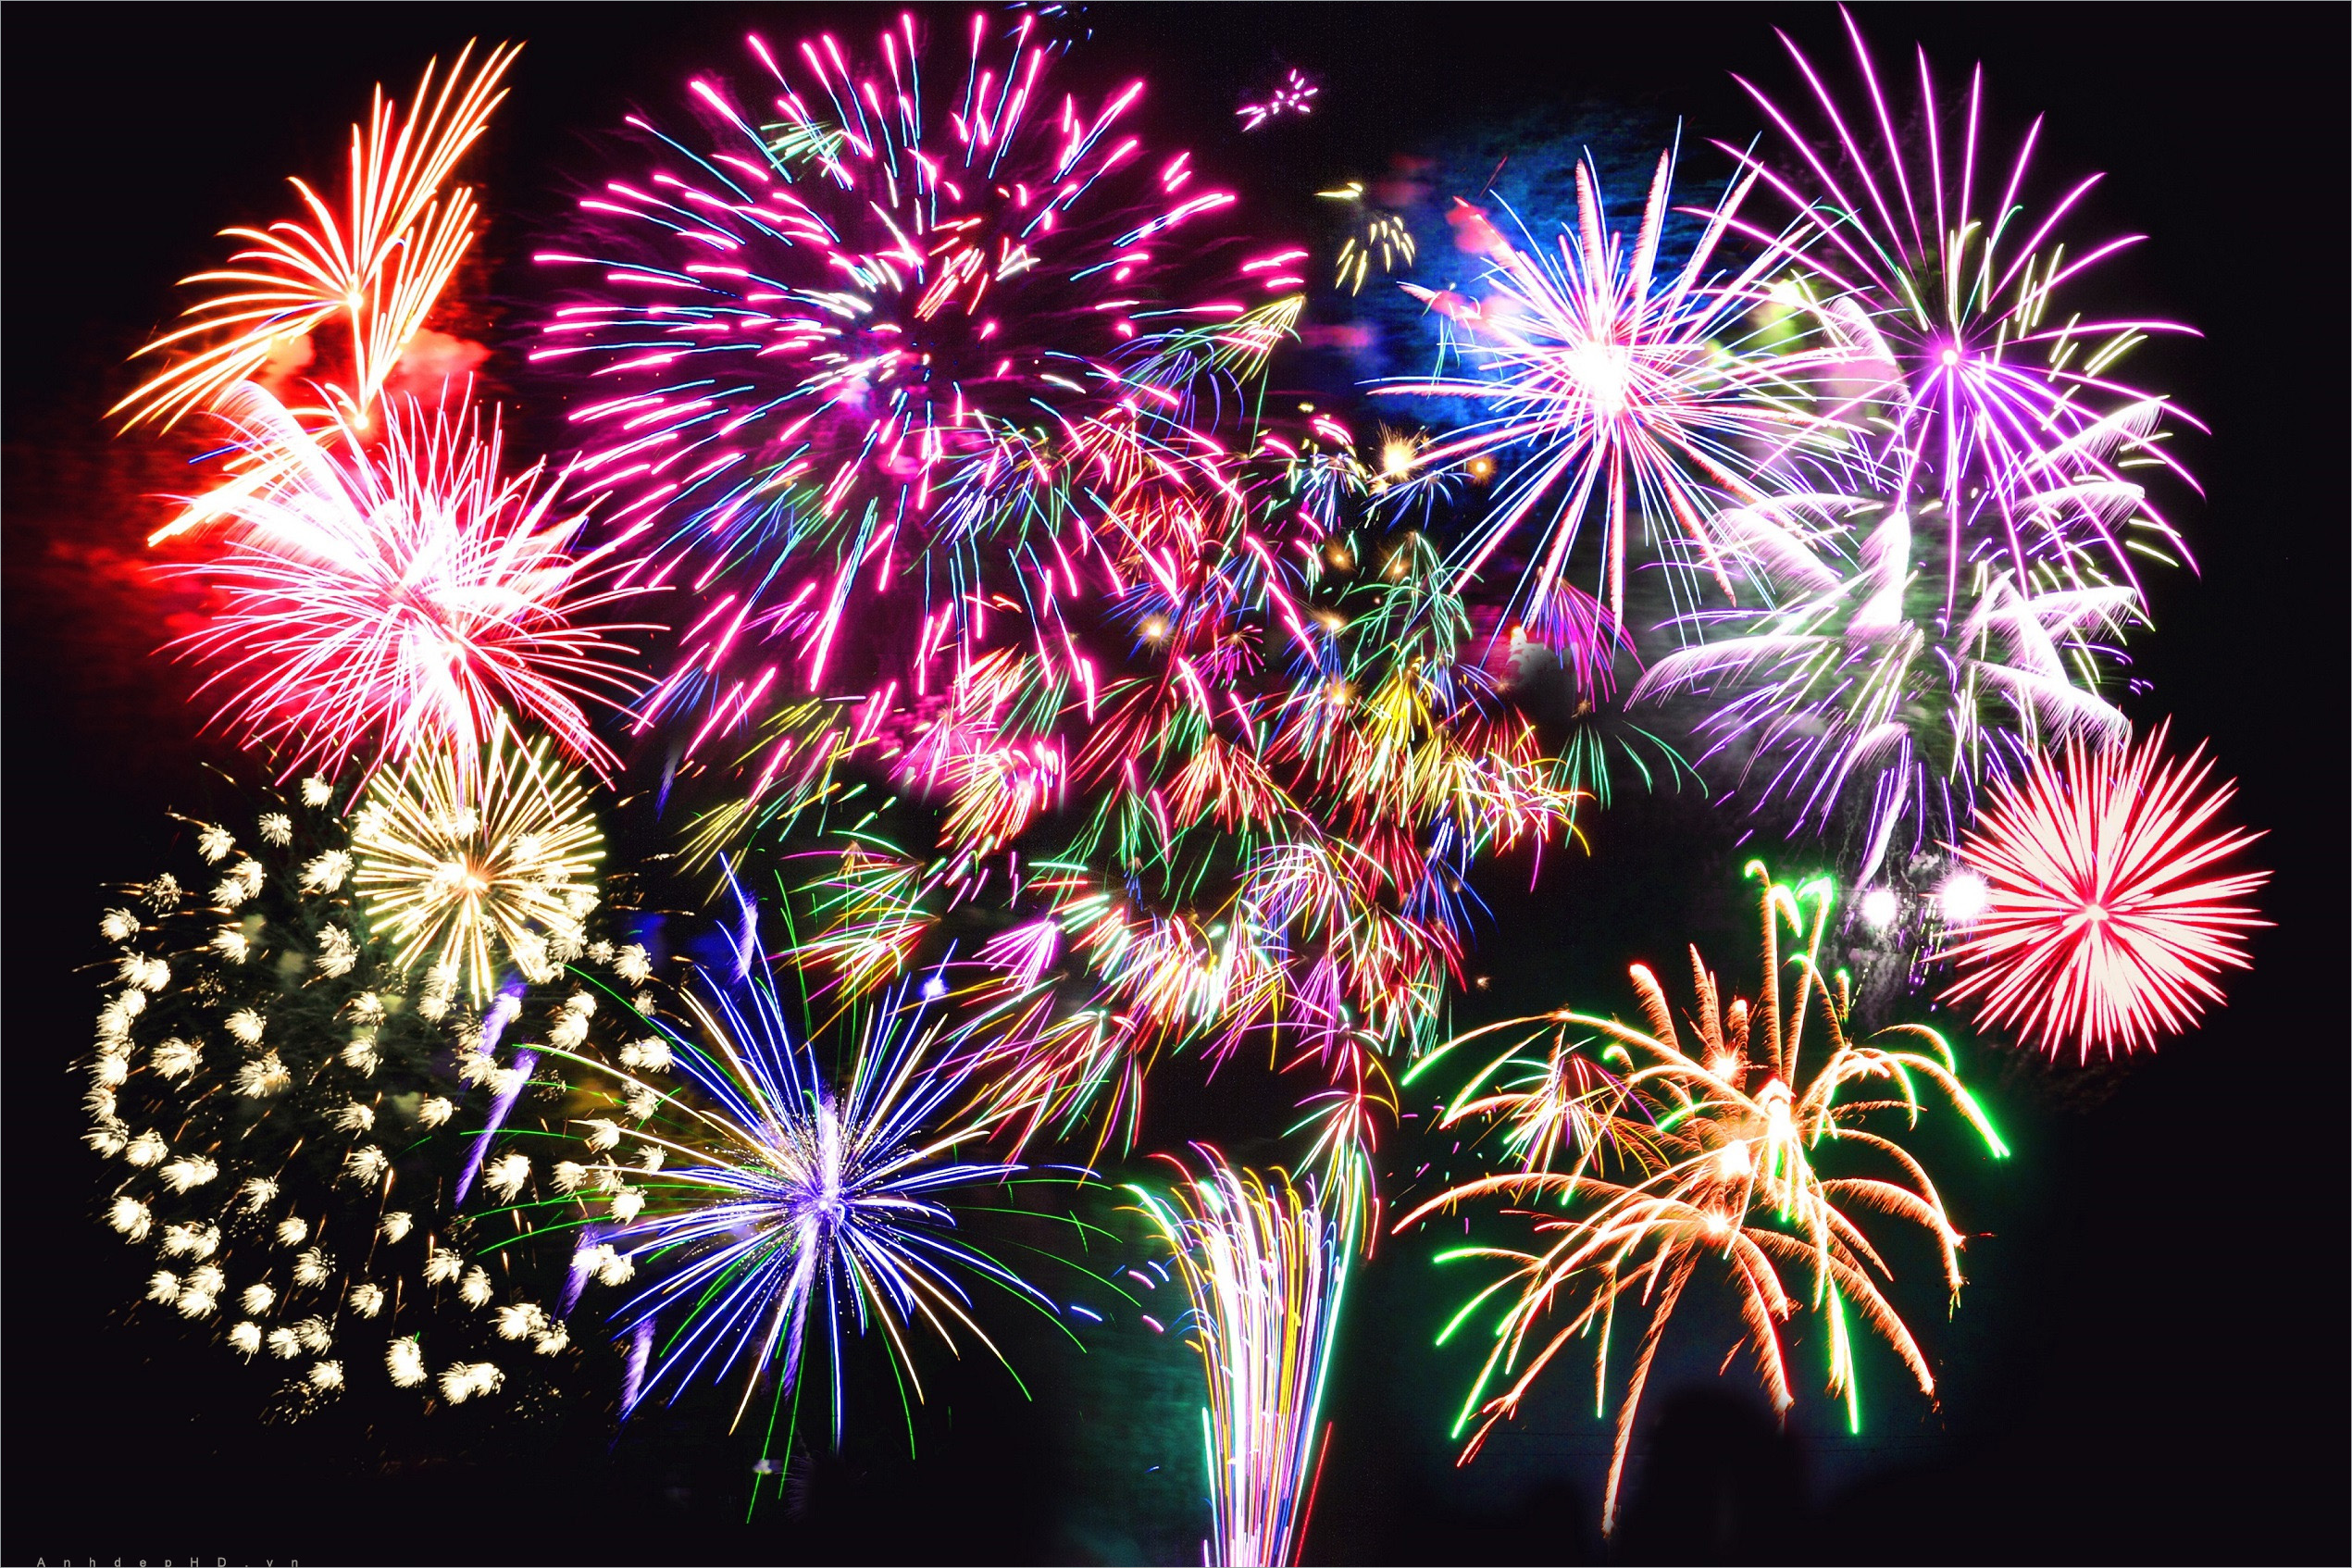 Hình ảnh pháo hoa ngày tết chúc mừng năm mới đẹp nhất